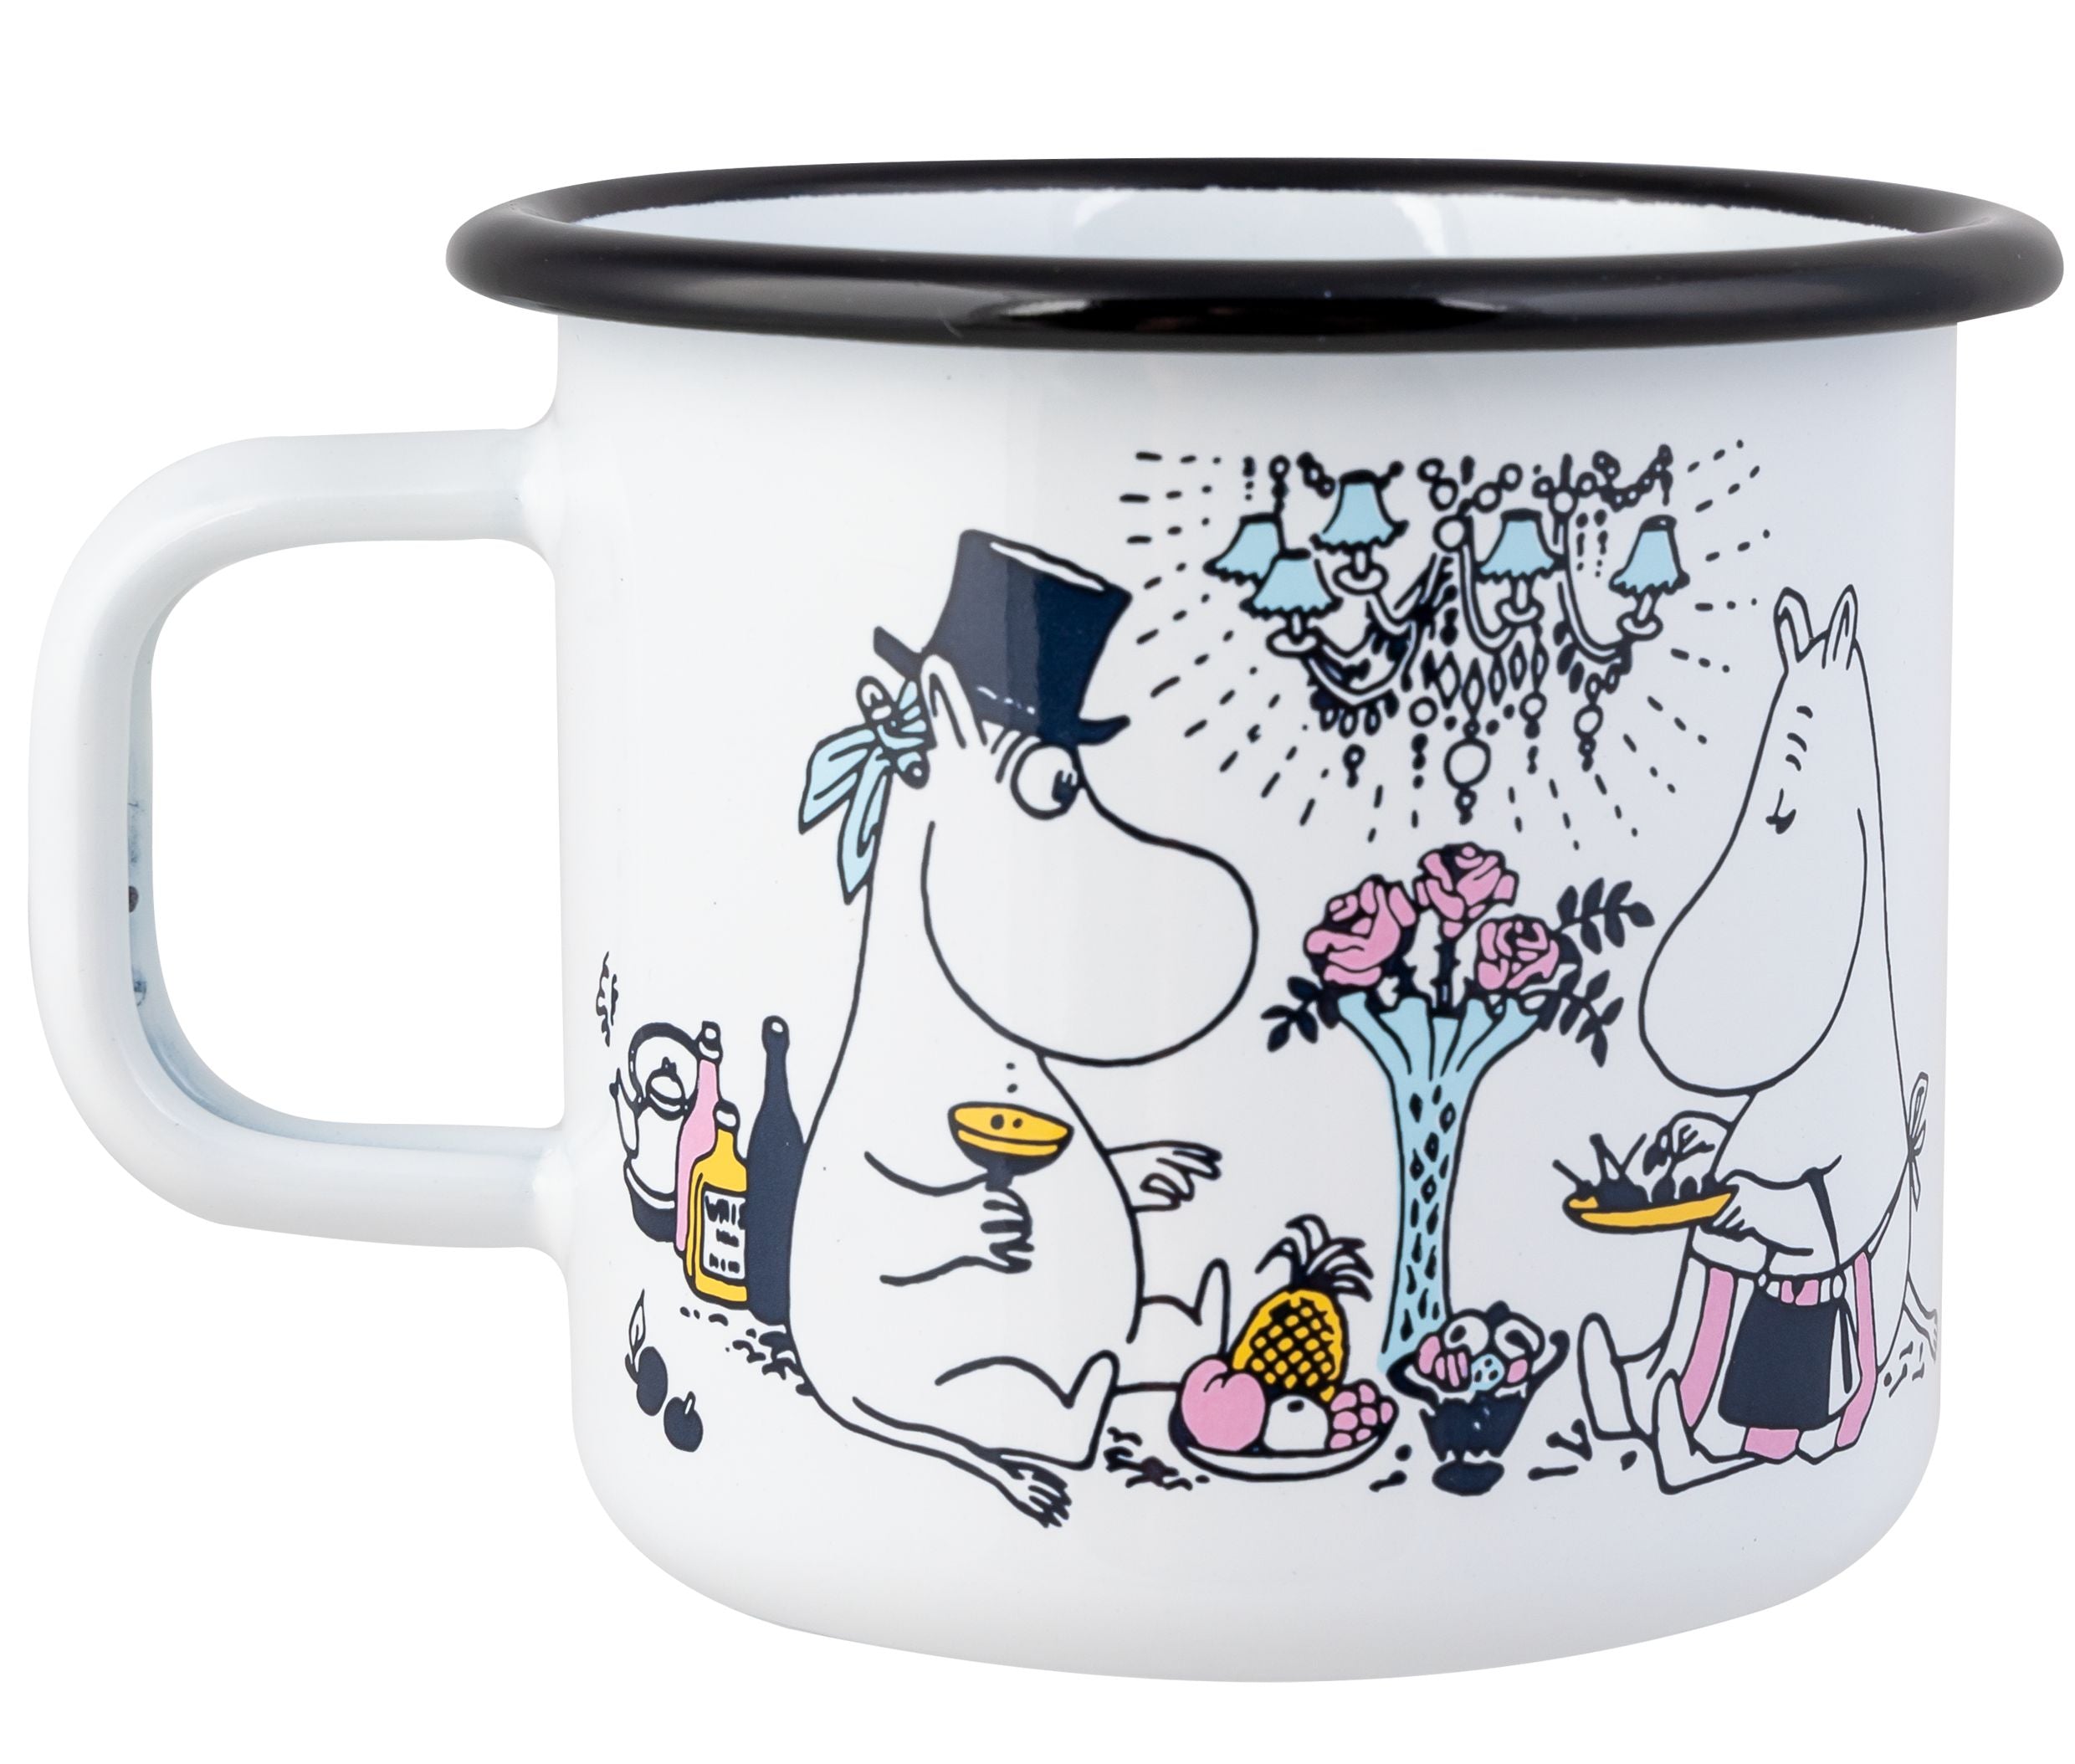 Muurla Moomin Enamel Mug Date Night